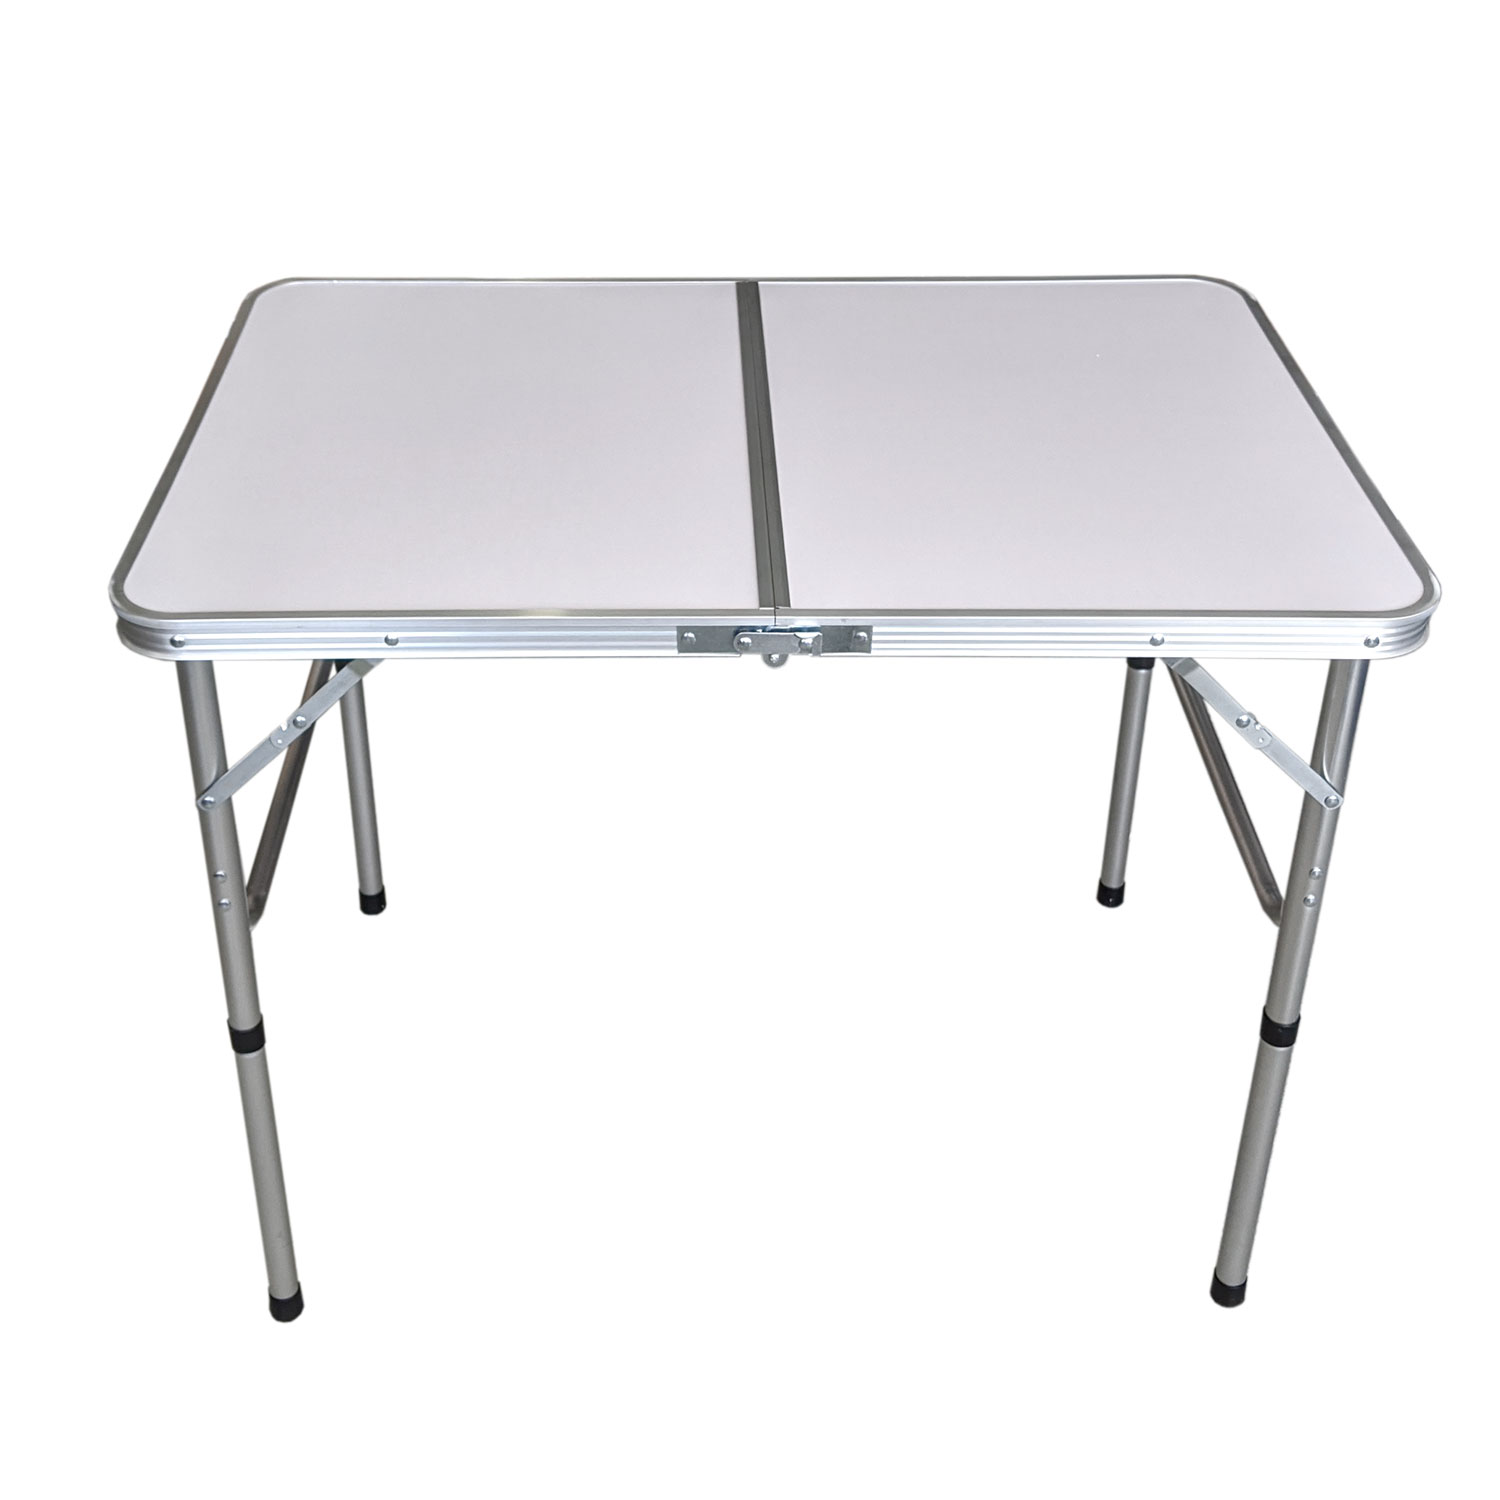 Alumin Klapptisch Campingtisch faltbar Gartentisch Falttisch Partytisch 60x45cm 